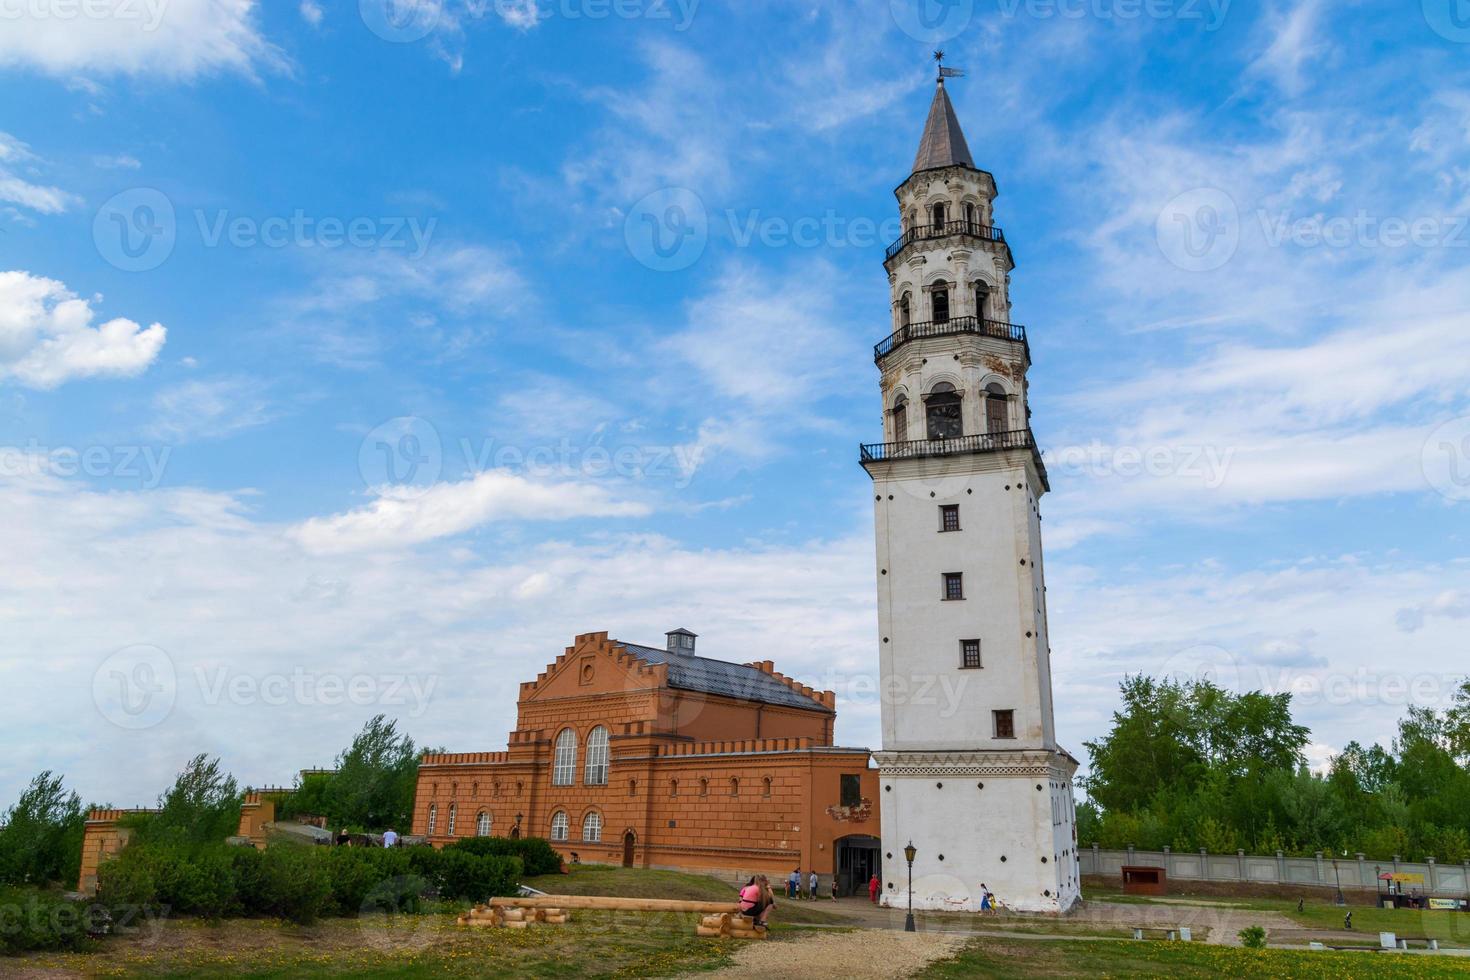 nevyanskaya lutande tornet, ett historiskt monument från 1700-talet foto